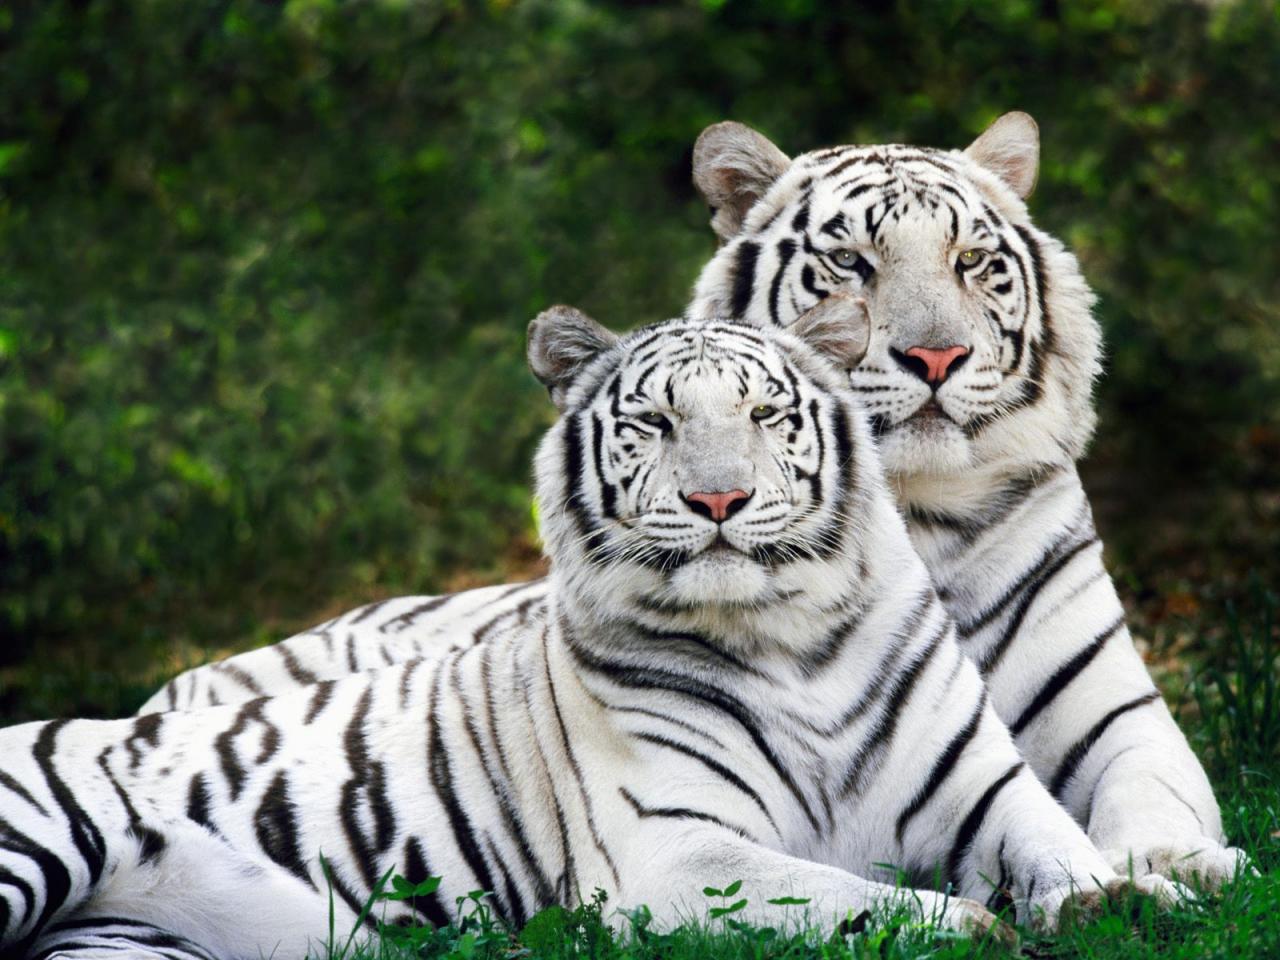 обои Белые тигры фото